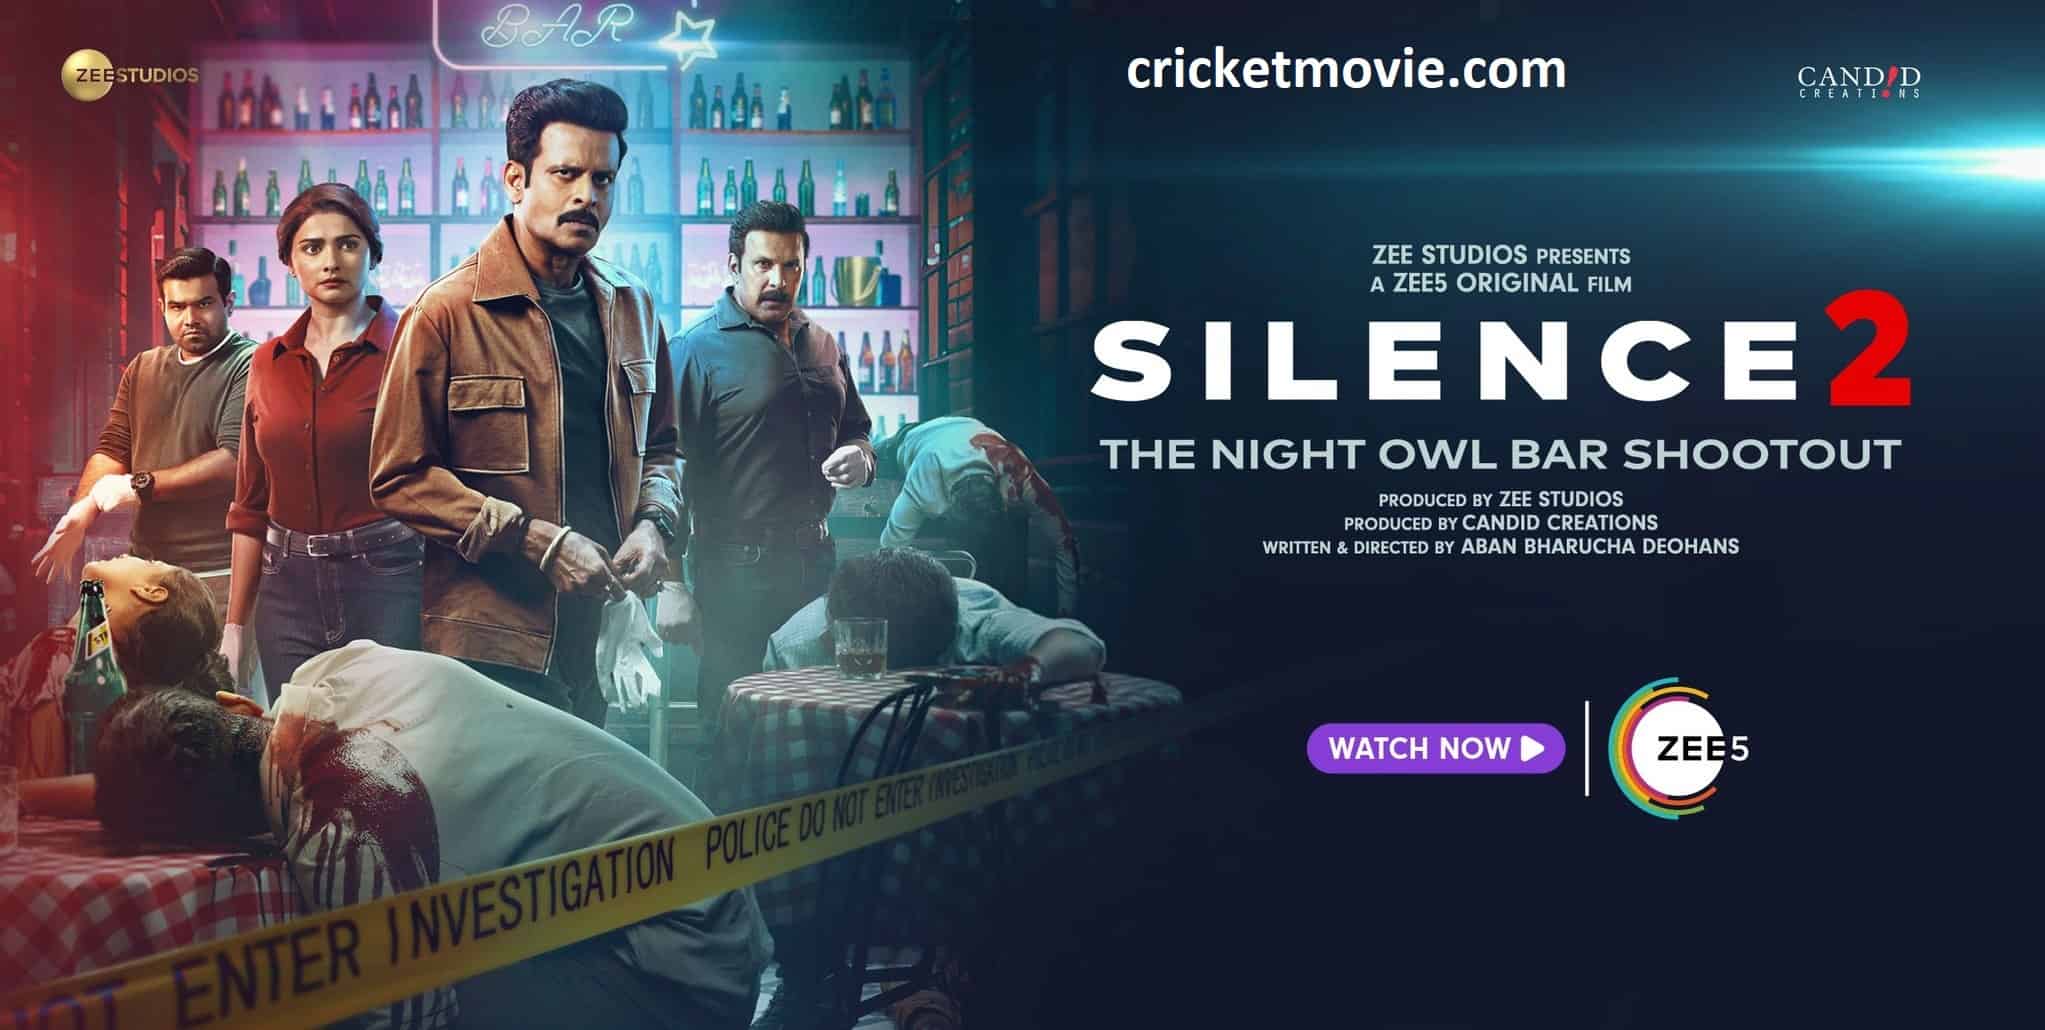 Silence 2 Review-cricketmovie.com